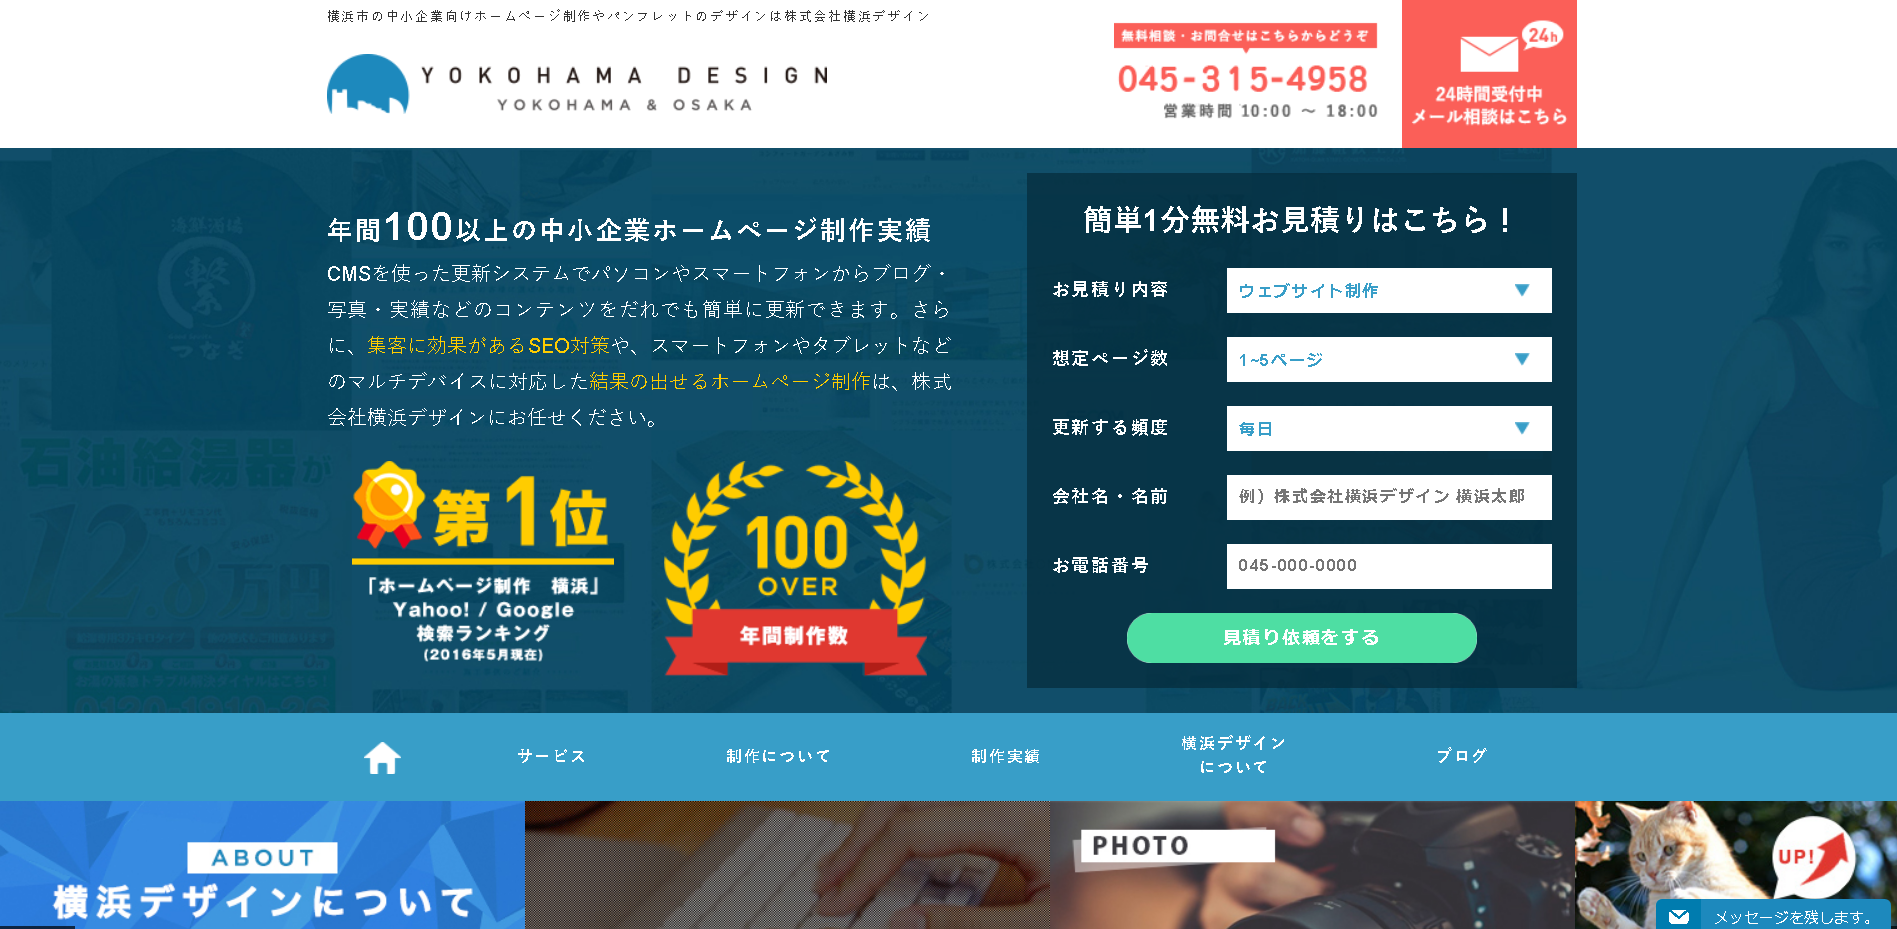 株式会社横浜デザインの横浜デザインサービス